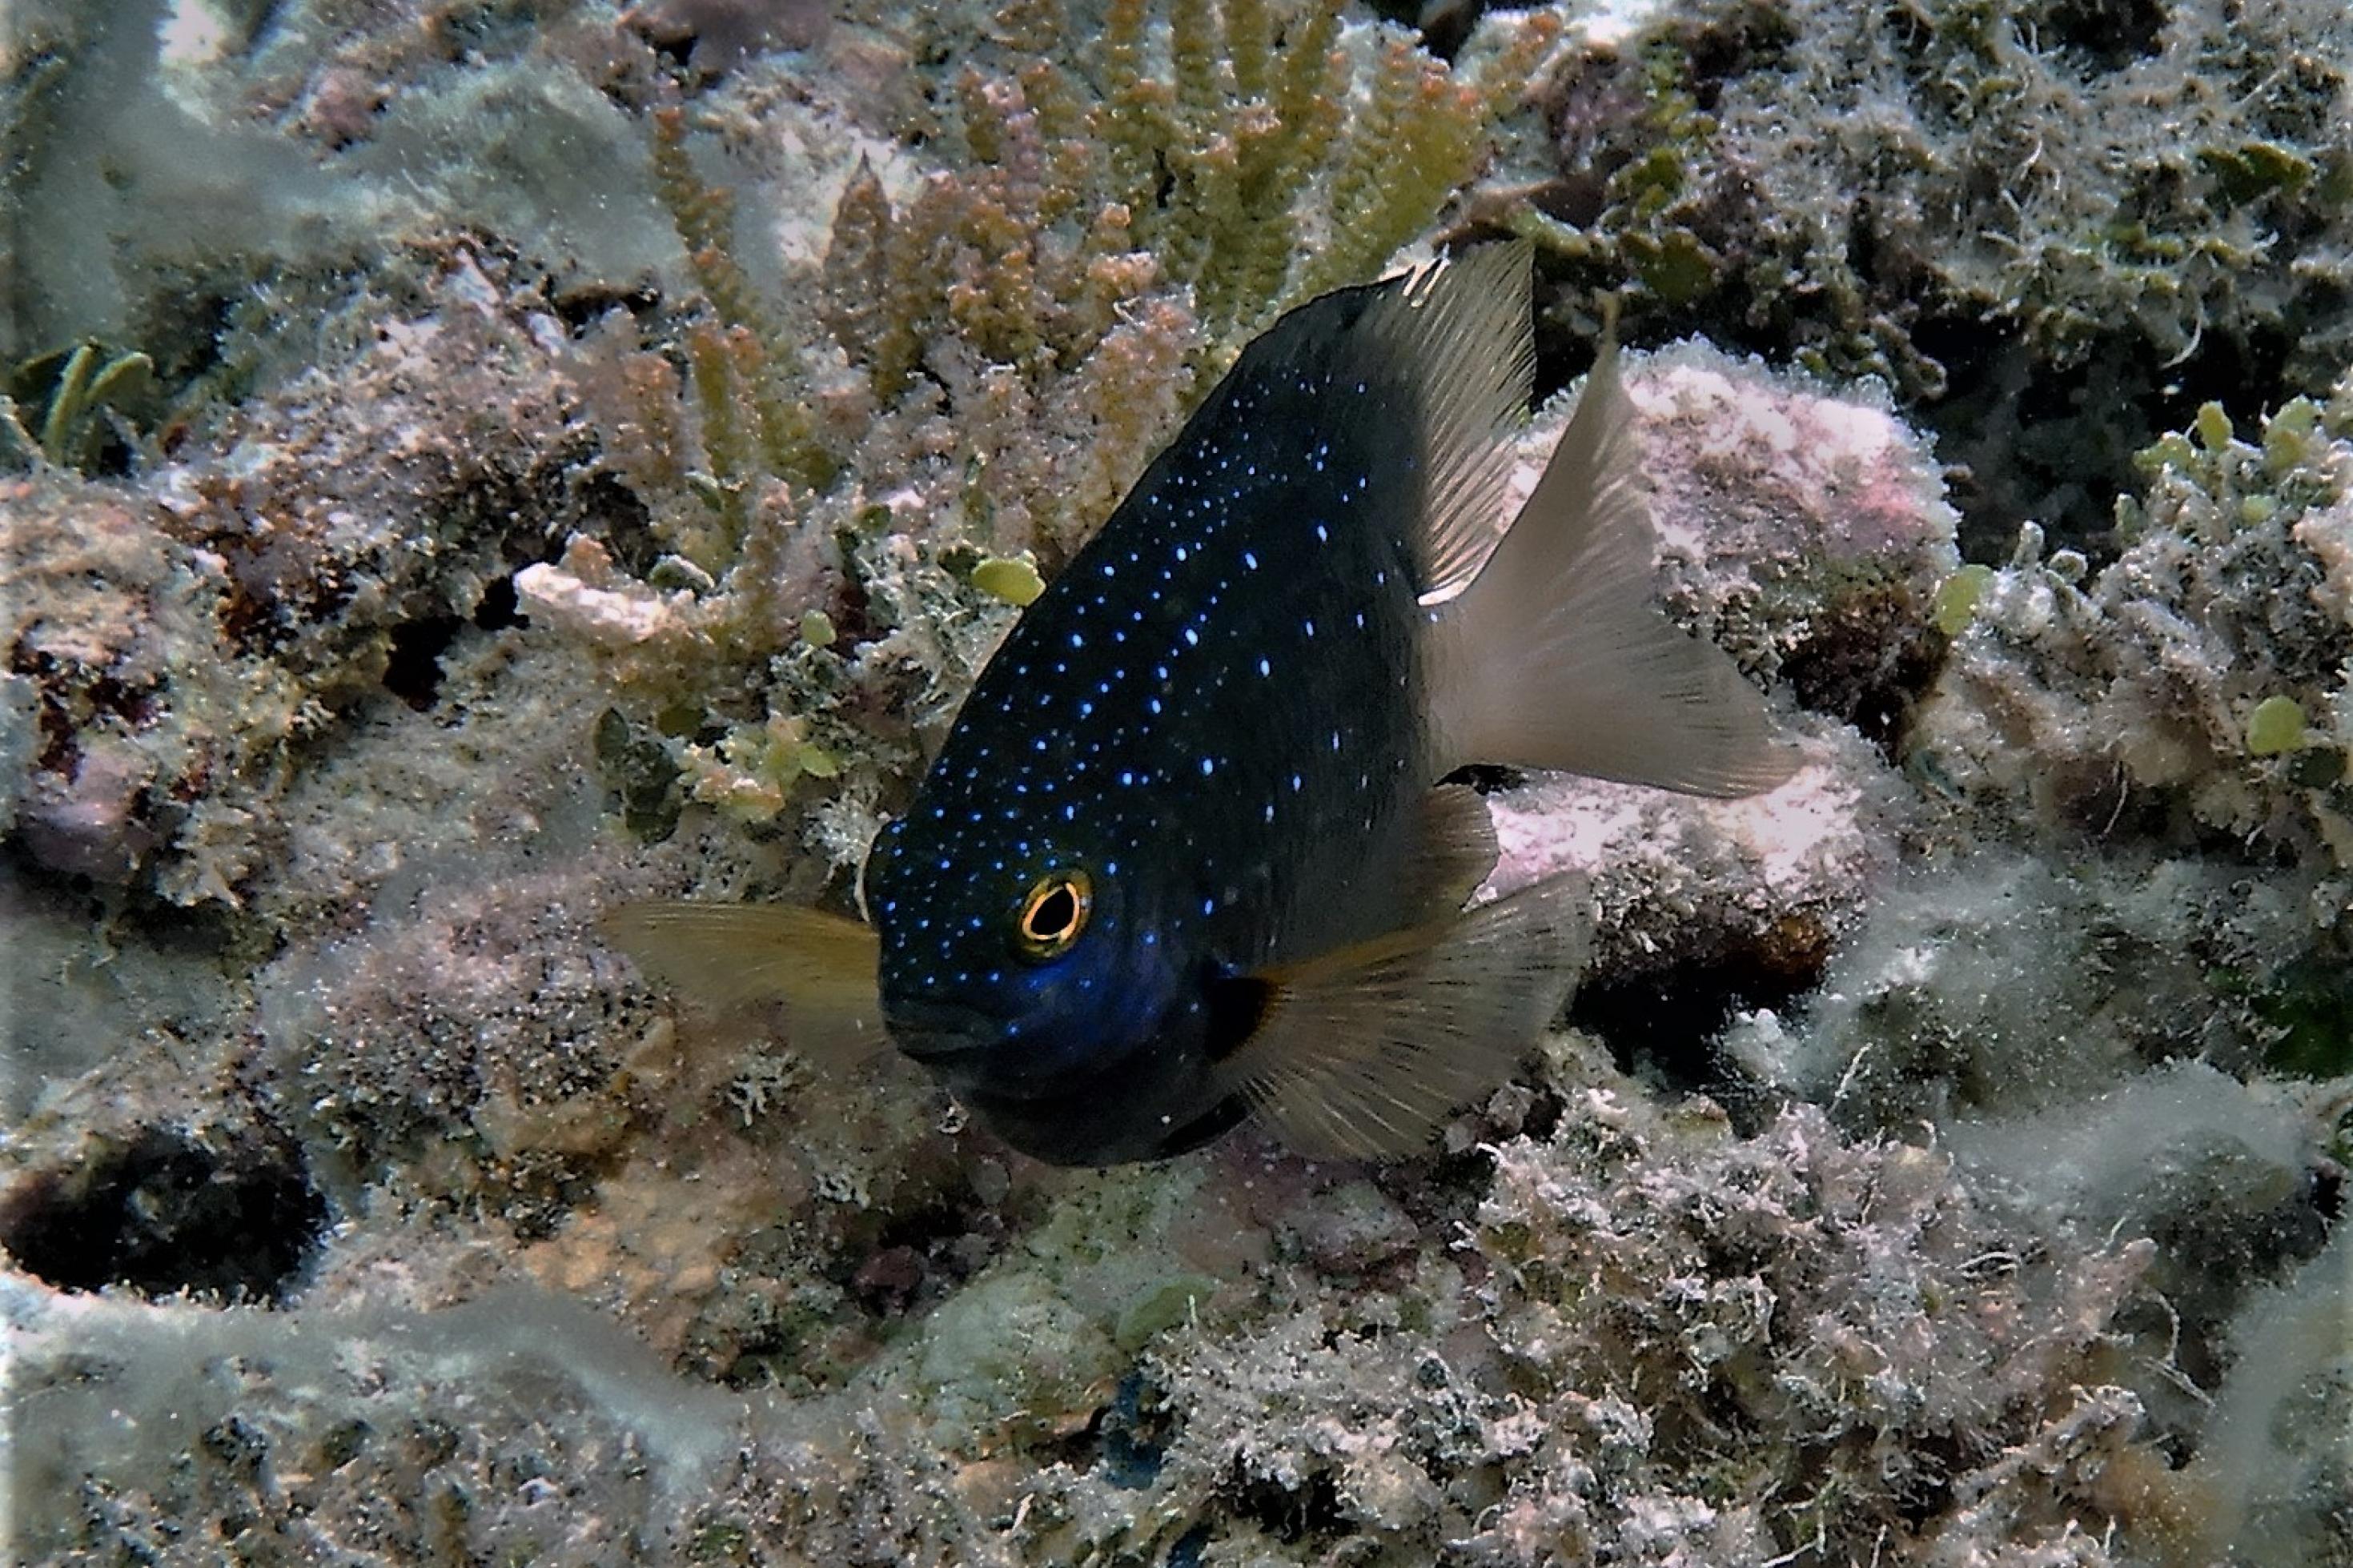 Unterwasserfoto von einem dunklen Riff-Fisch mit hellen Punkten, einem Juwelen-Riffbarsch, inmitten von Riffstrukturen.